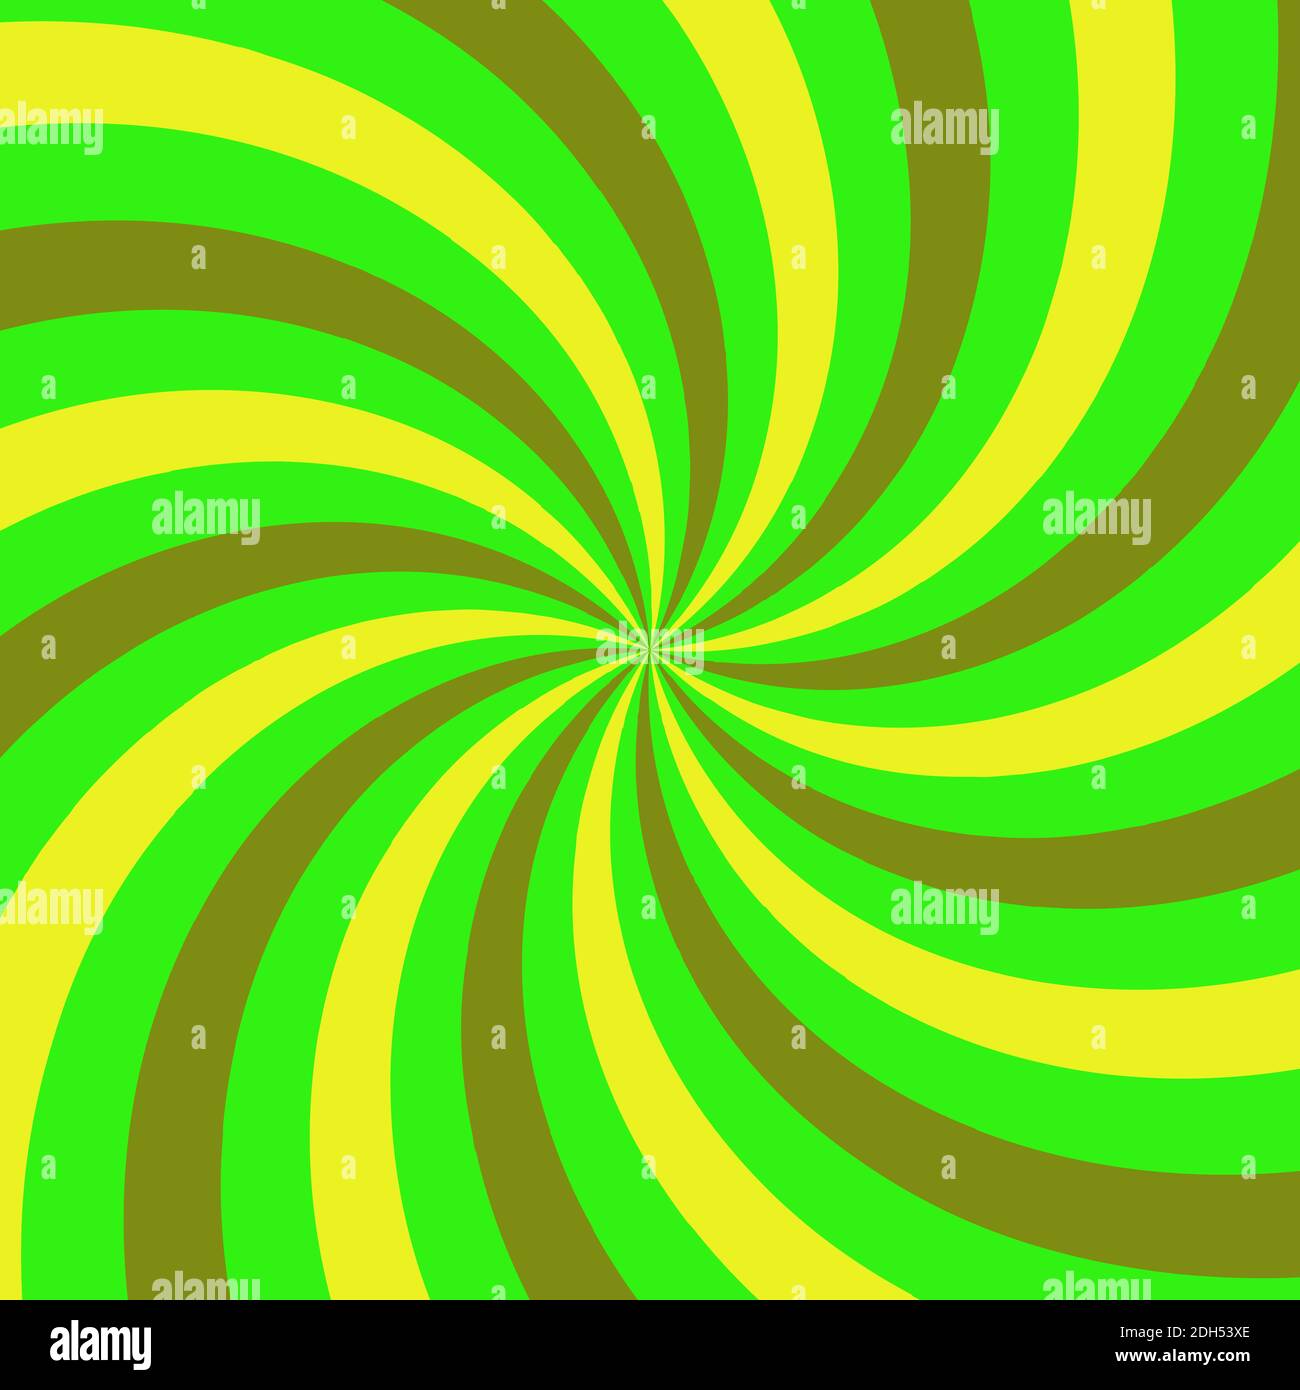 Immagine di sfondo astratta con forma a spirale verde. Illustrazione Vettoriale